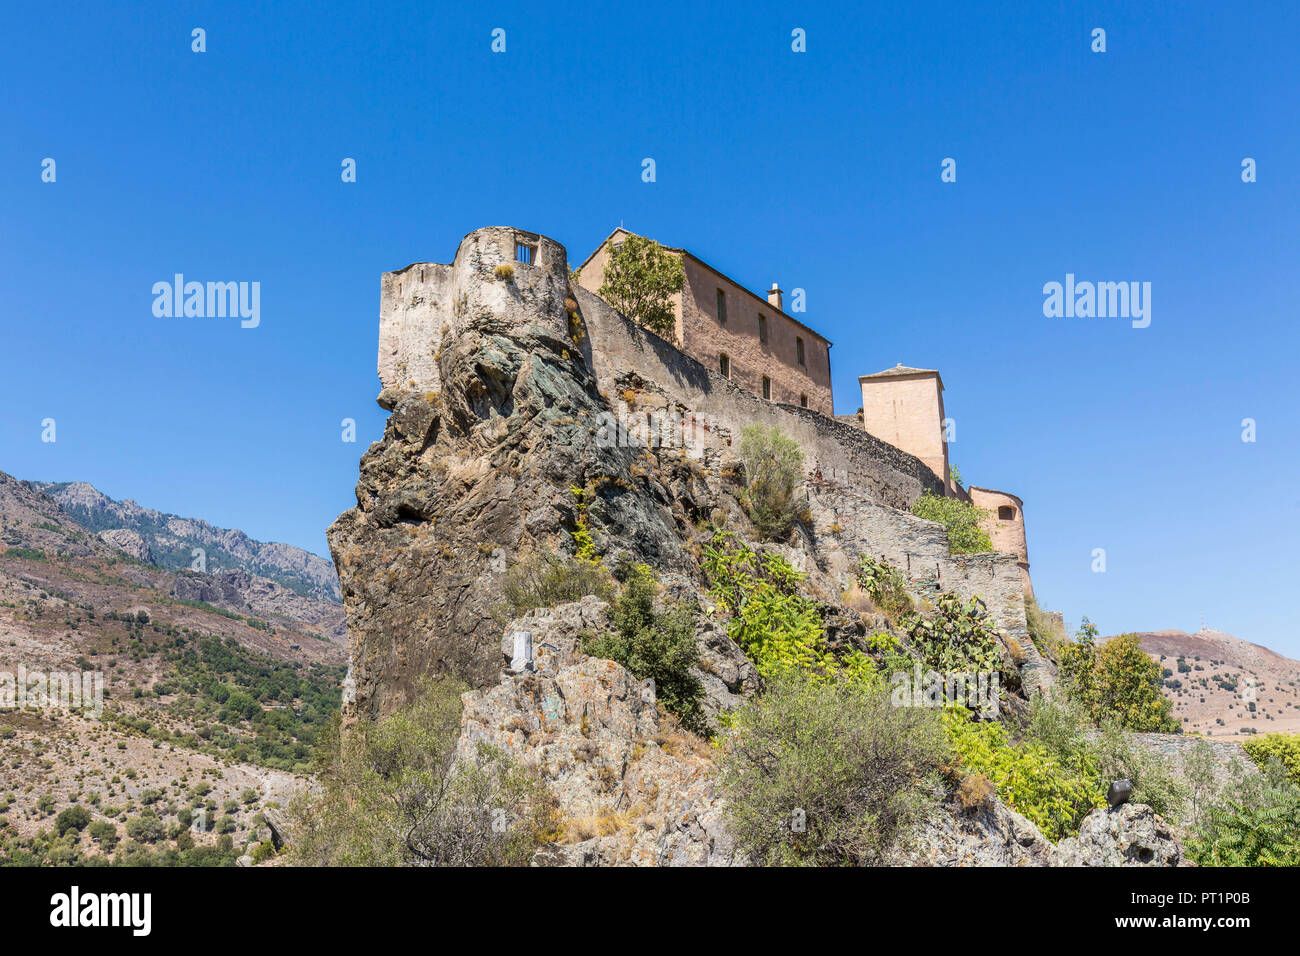 L'ancienne citadelle construite sur les rochers, Corte, Corse, France Banque D'Images